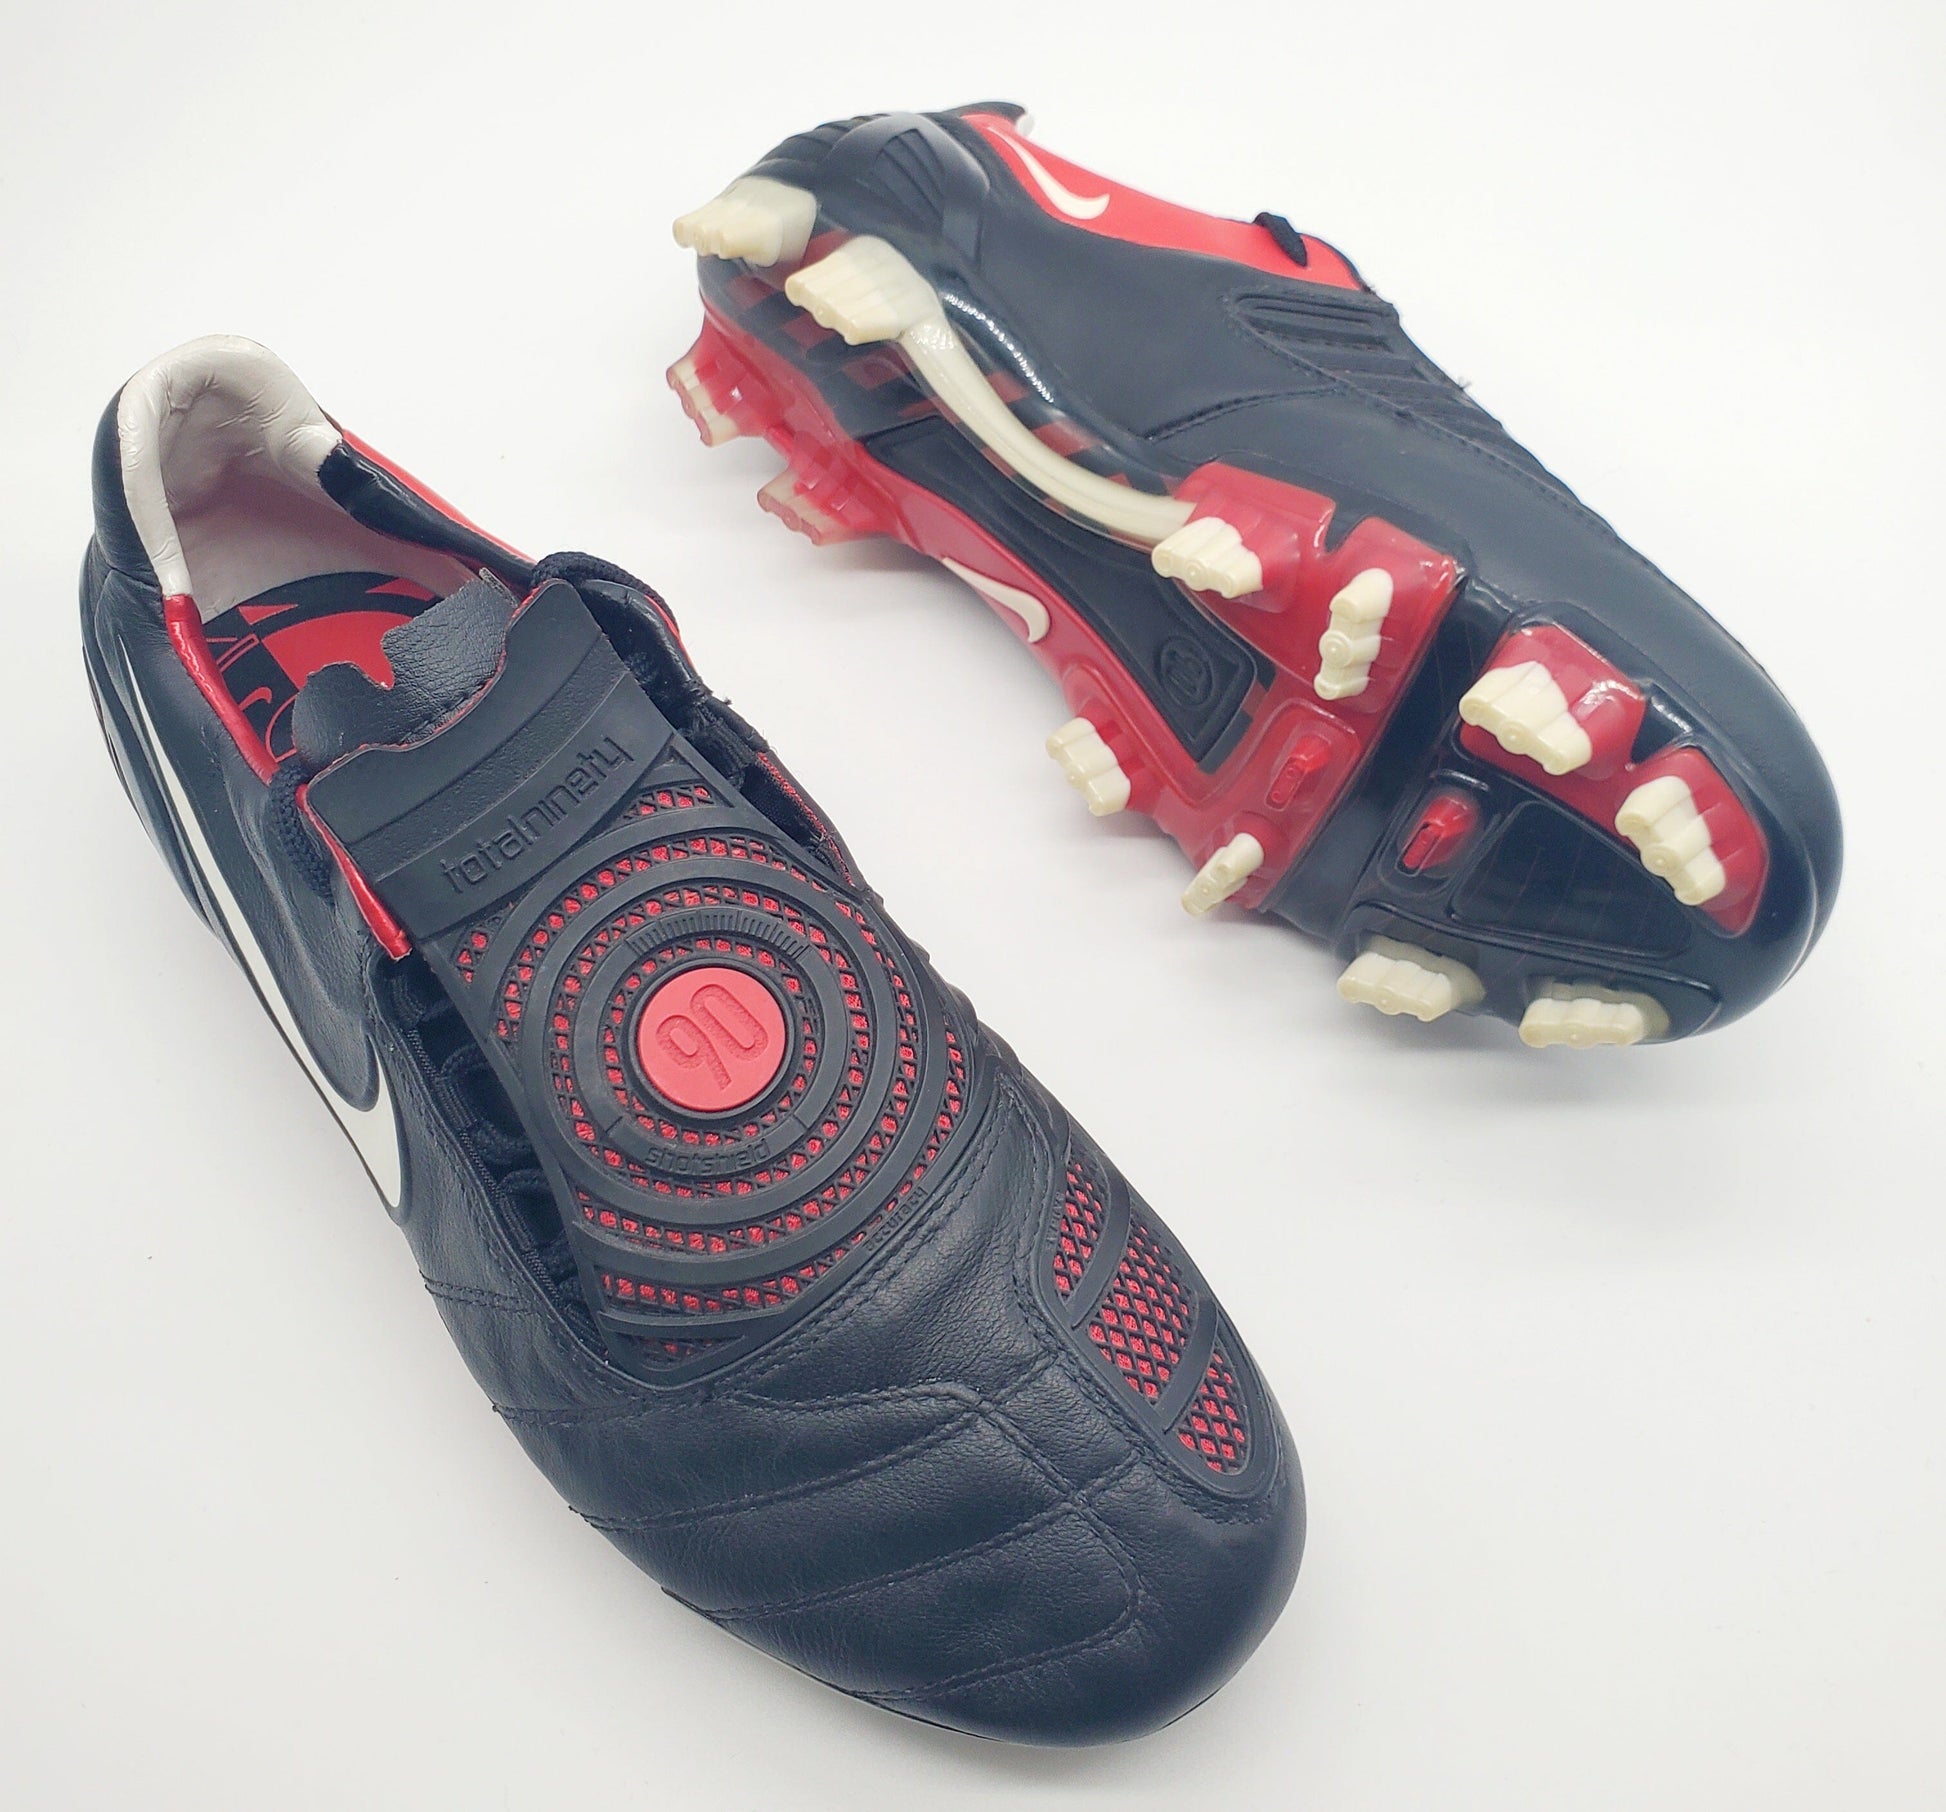 Nike T90 Total 90 FG – Classic Football Boots Ltd